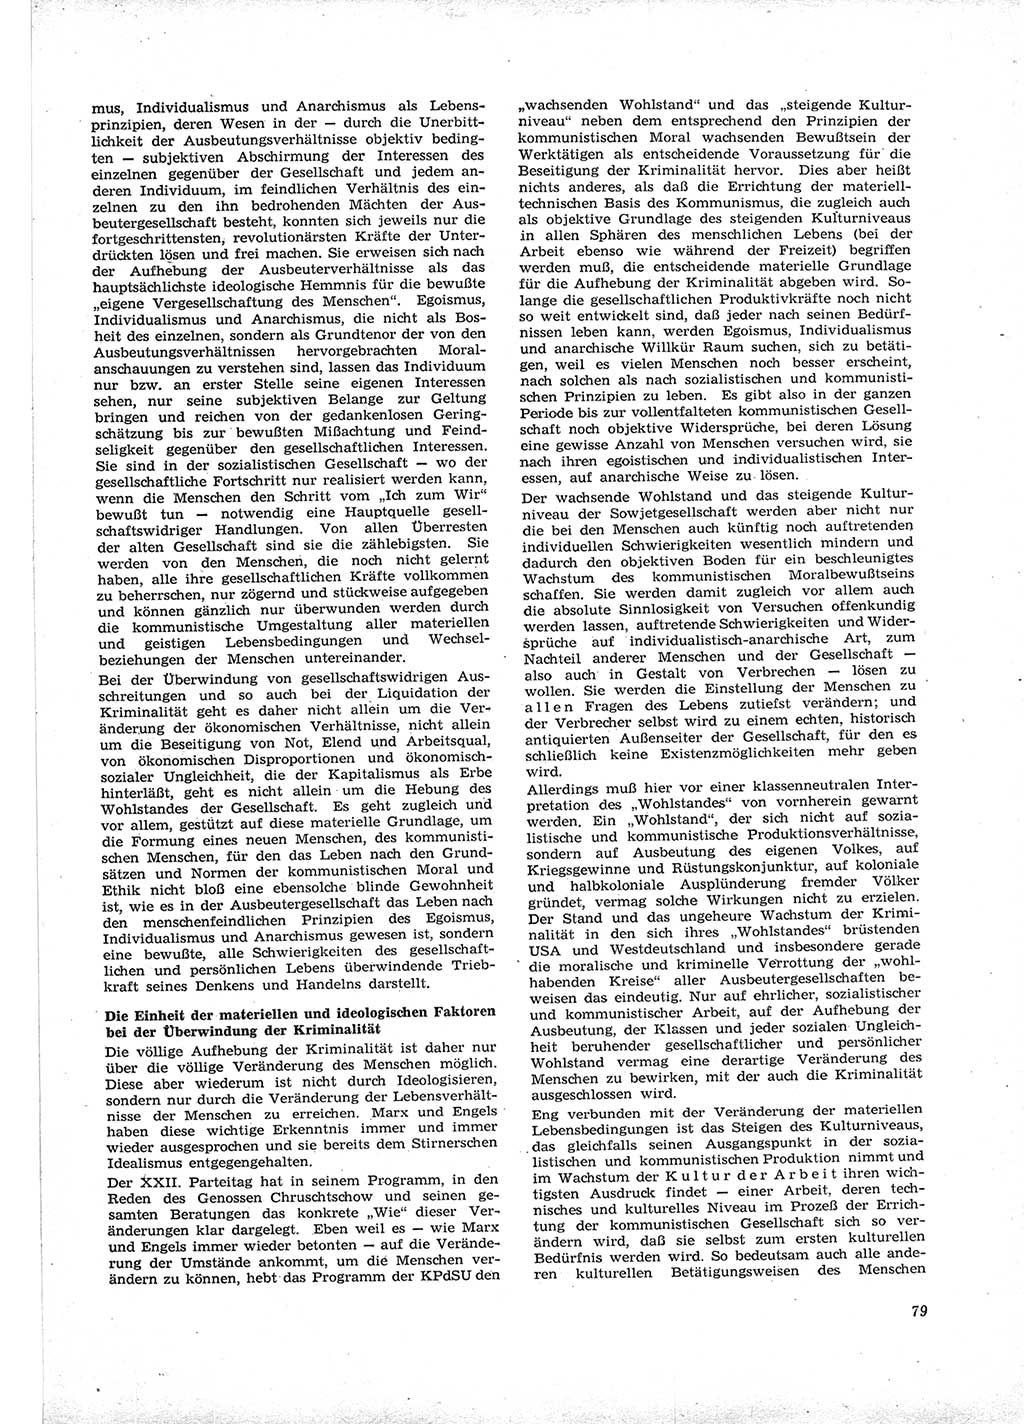 Neue Justiz (NJ), Zeitschrift für Recht und Rechtswissenschaft [Deutsche Demokratische Republik (DDR)], 16. Jahrgang 1962, Seite 79 (NJ DDR 1962, S. 79)